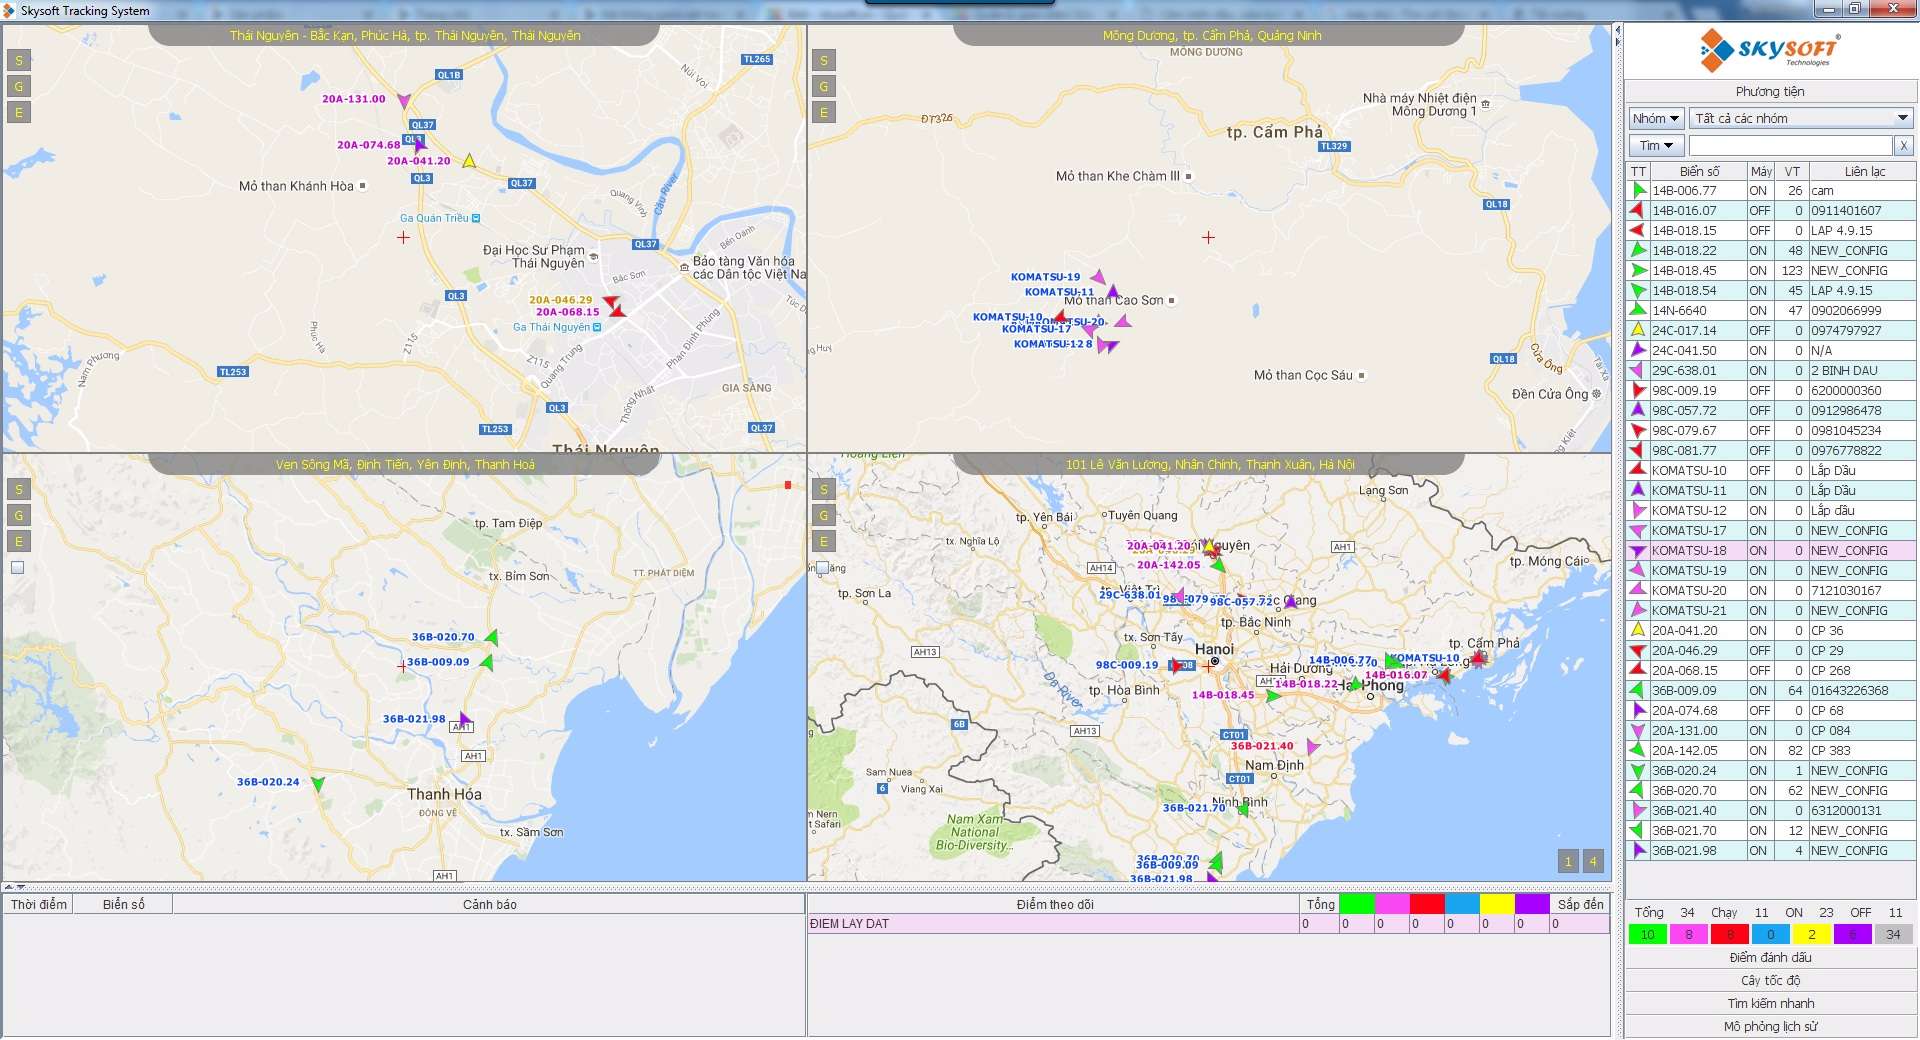 Hệ thống giám sát hành trình cho phép hiển thị cùng lúc 4 bản đồ khu vực trên giao diện quản lý